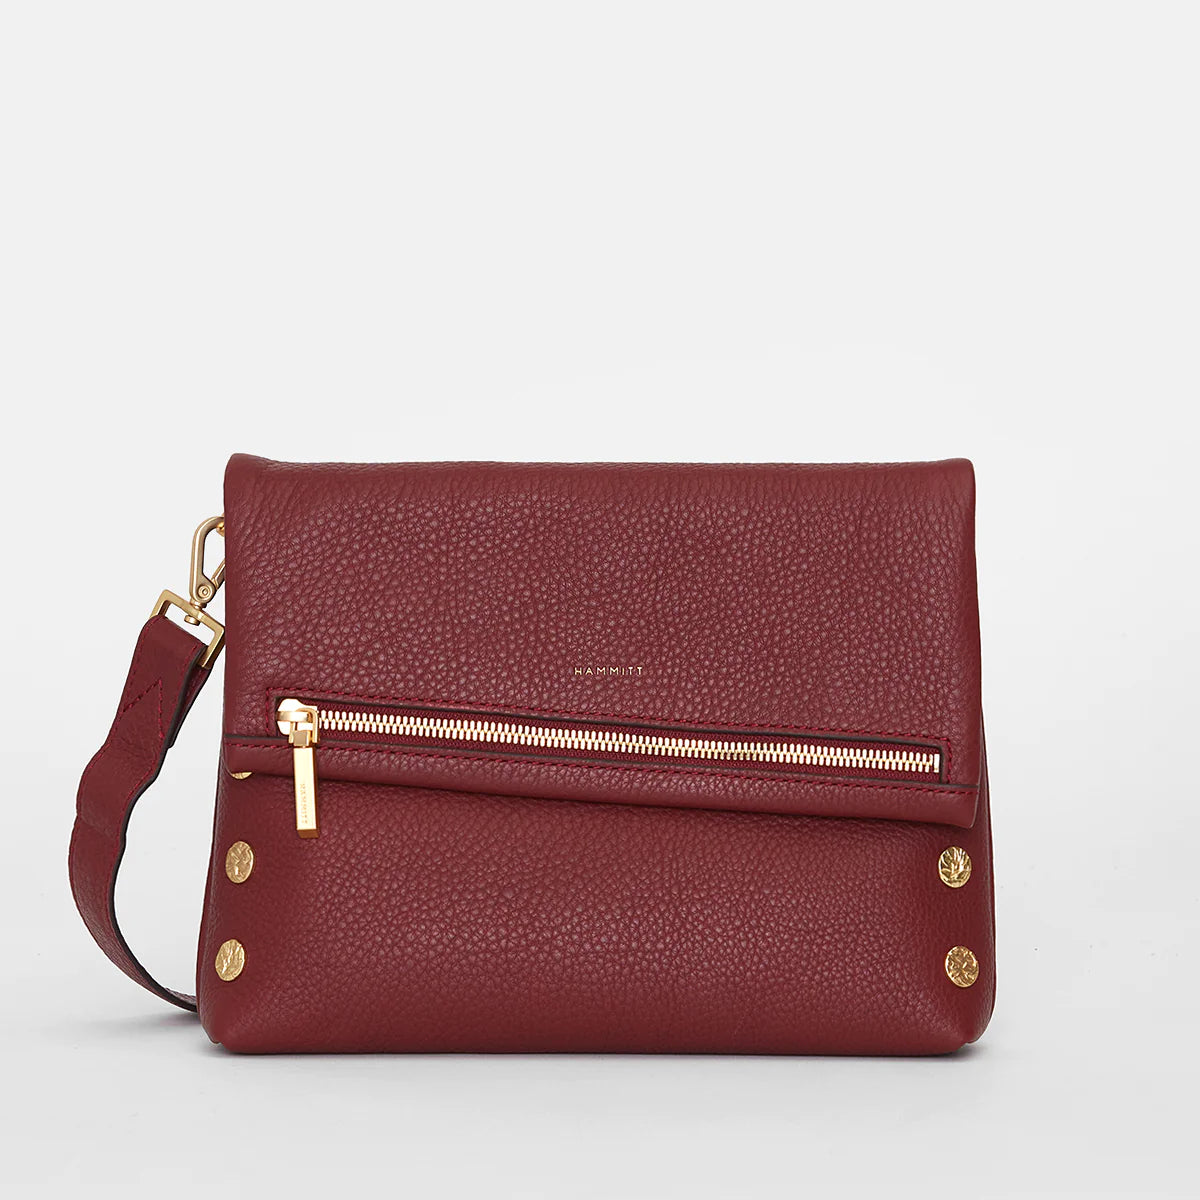 VIP Medium Handbag - Pomodoro Red